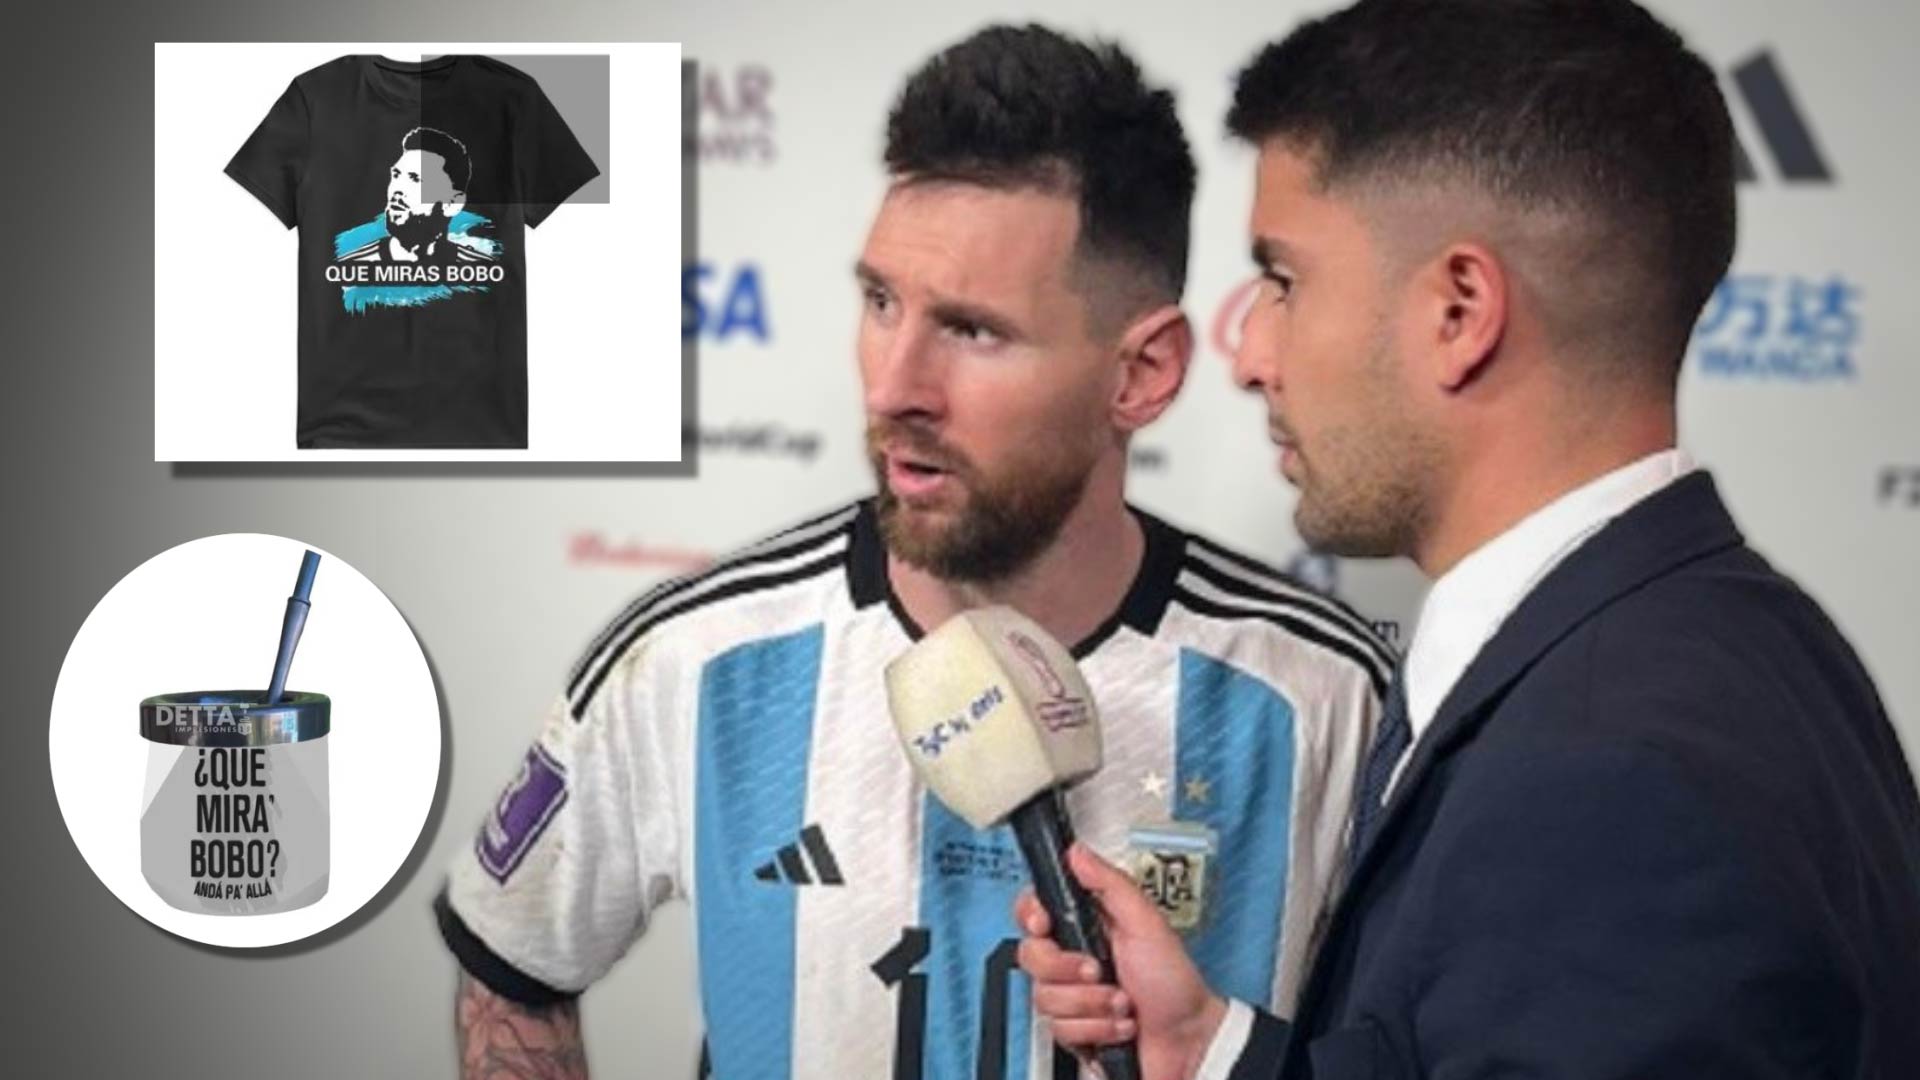 Qué mirás, bobo”: ya es furor el merchandising con la frase del enojo de  Messi - Infobae